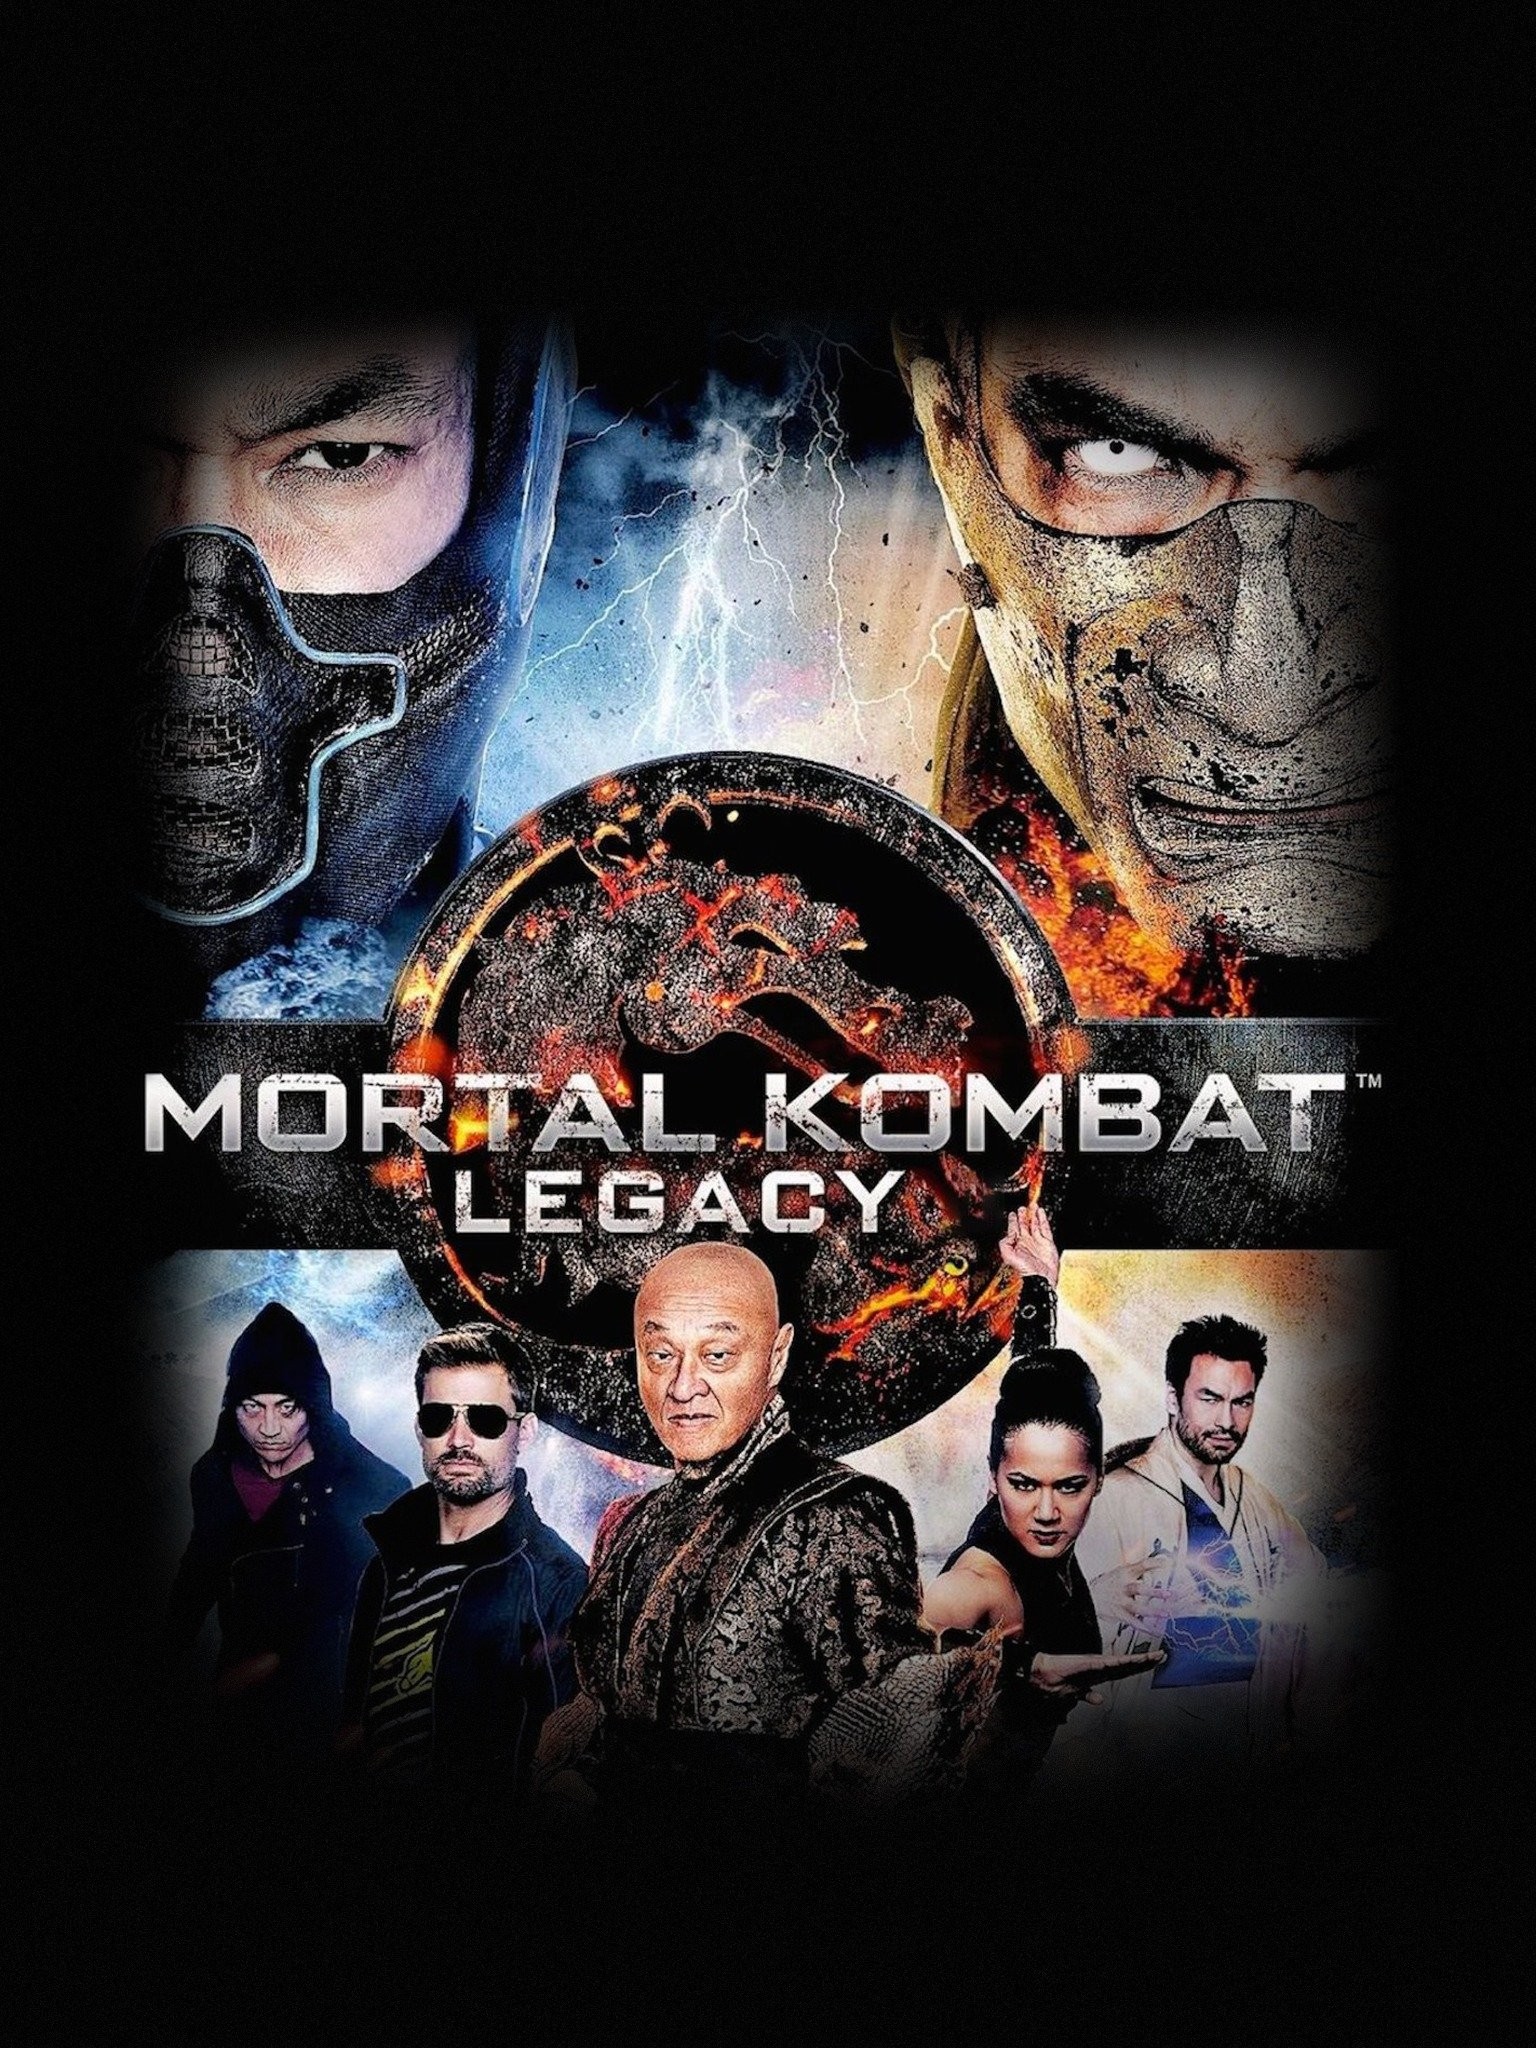 Mortal Kombat 1's Kano is a 'Glow-Down